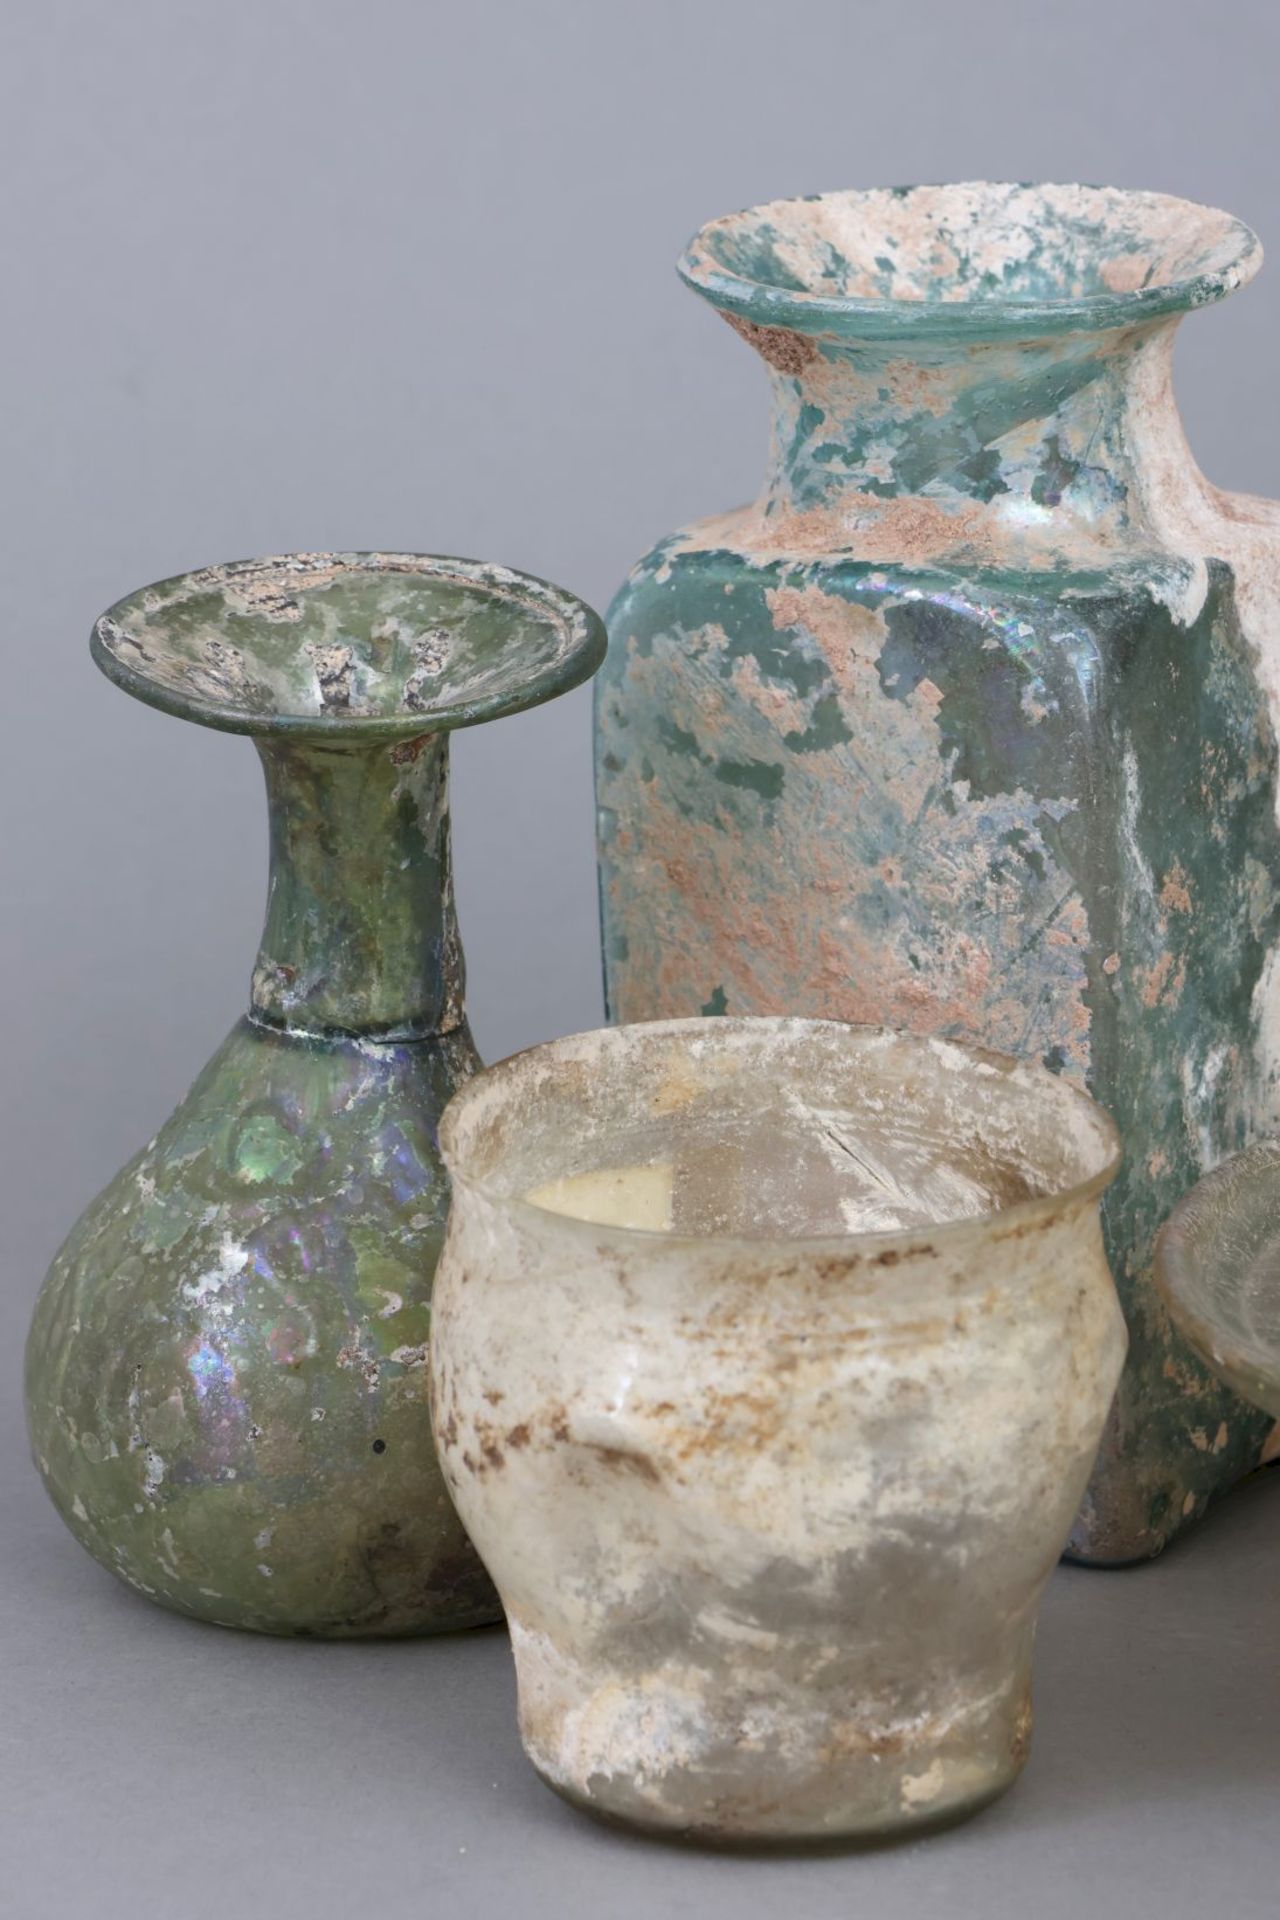 Sammlung (7 Stück) antiker römischer Glasbecher und Gefäße - Image 2 of 3